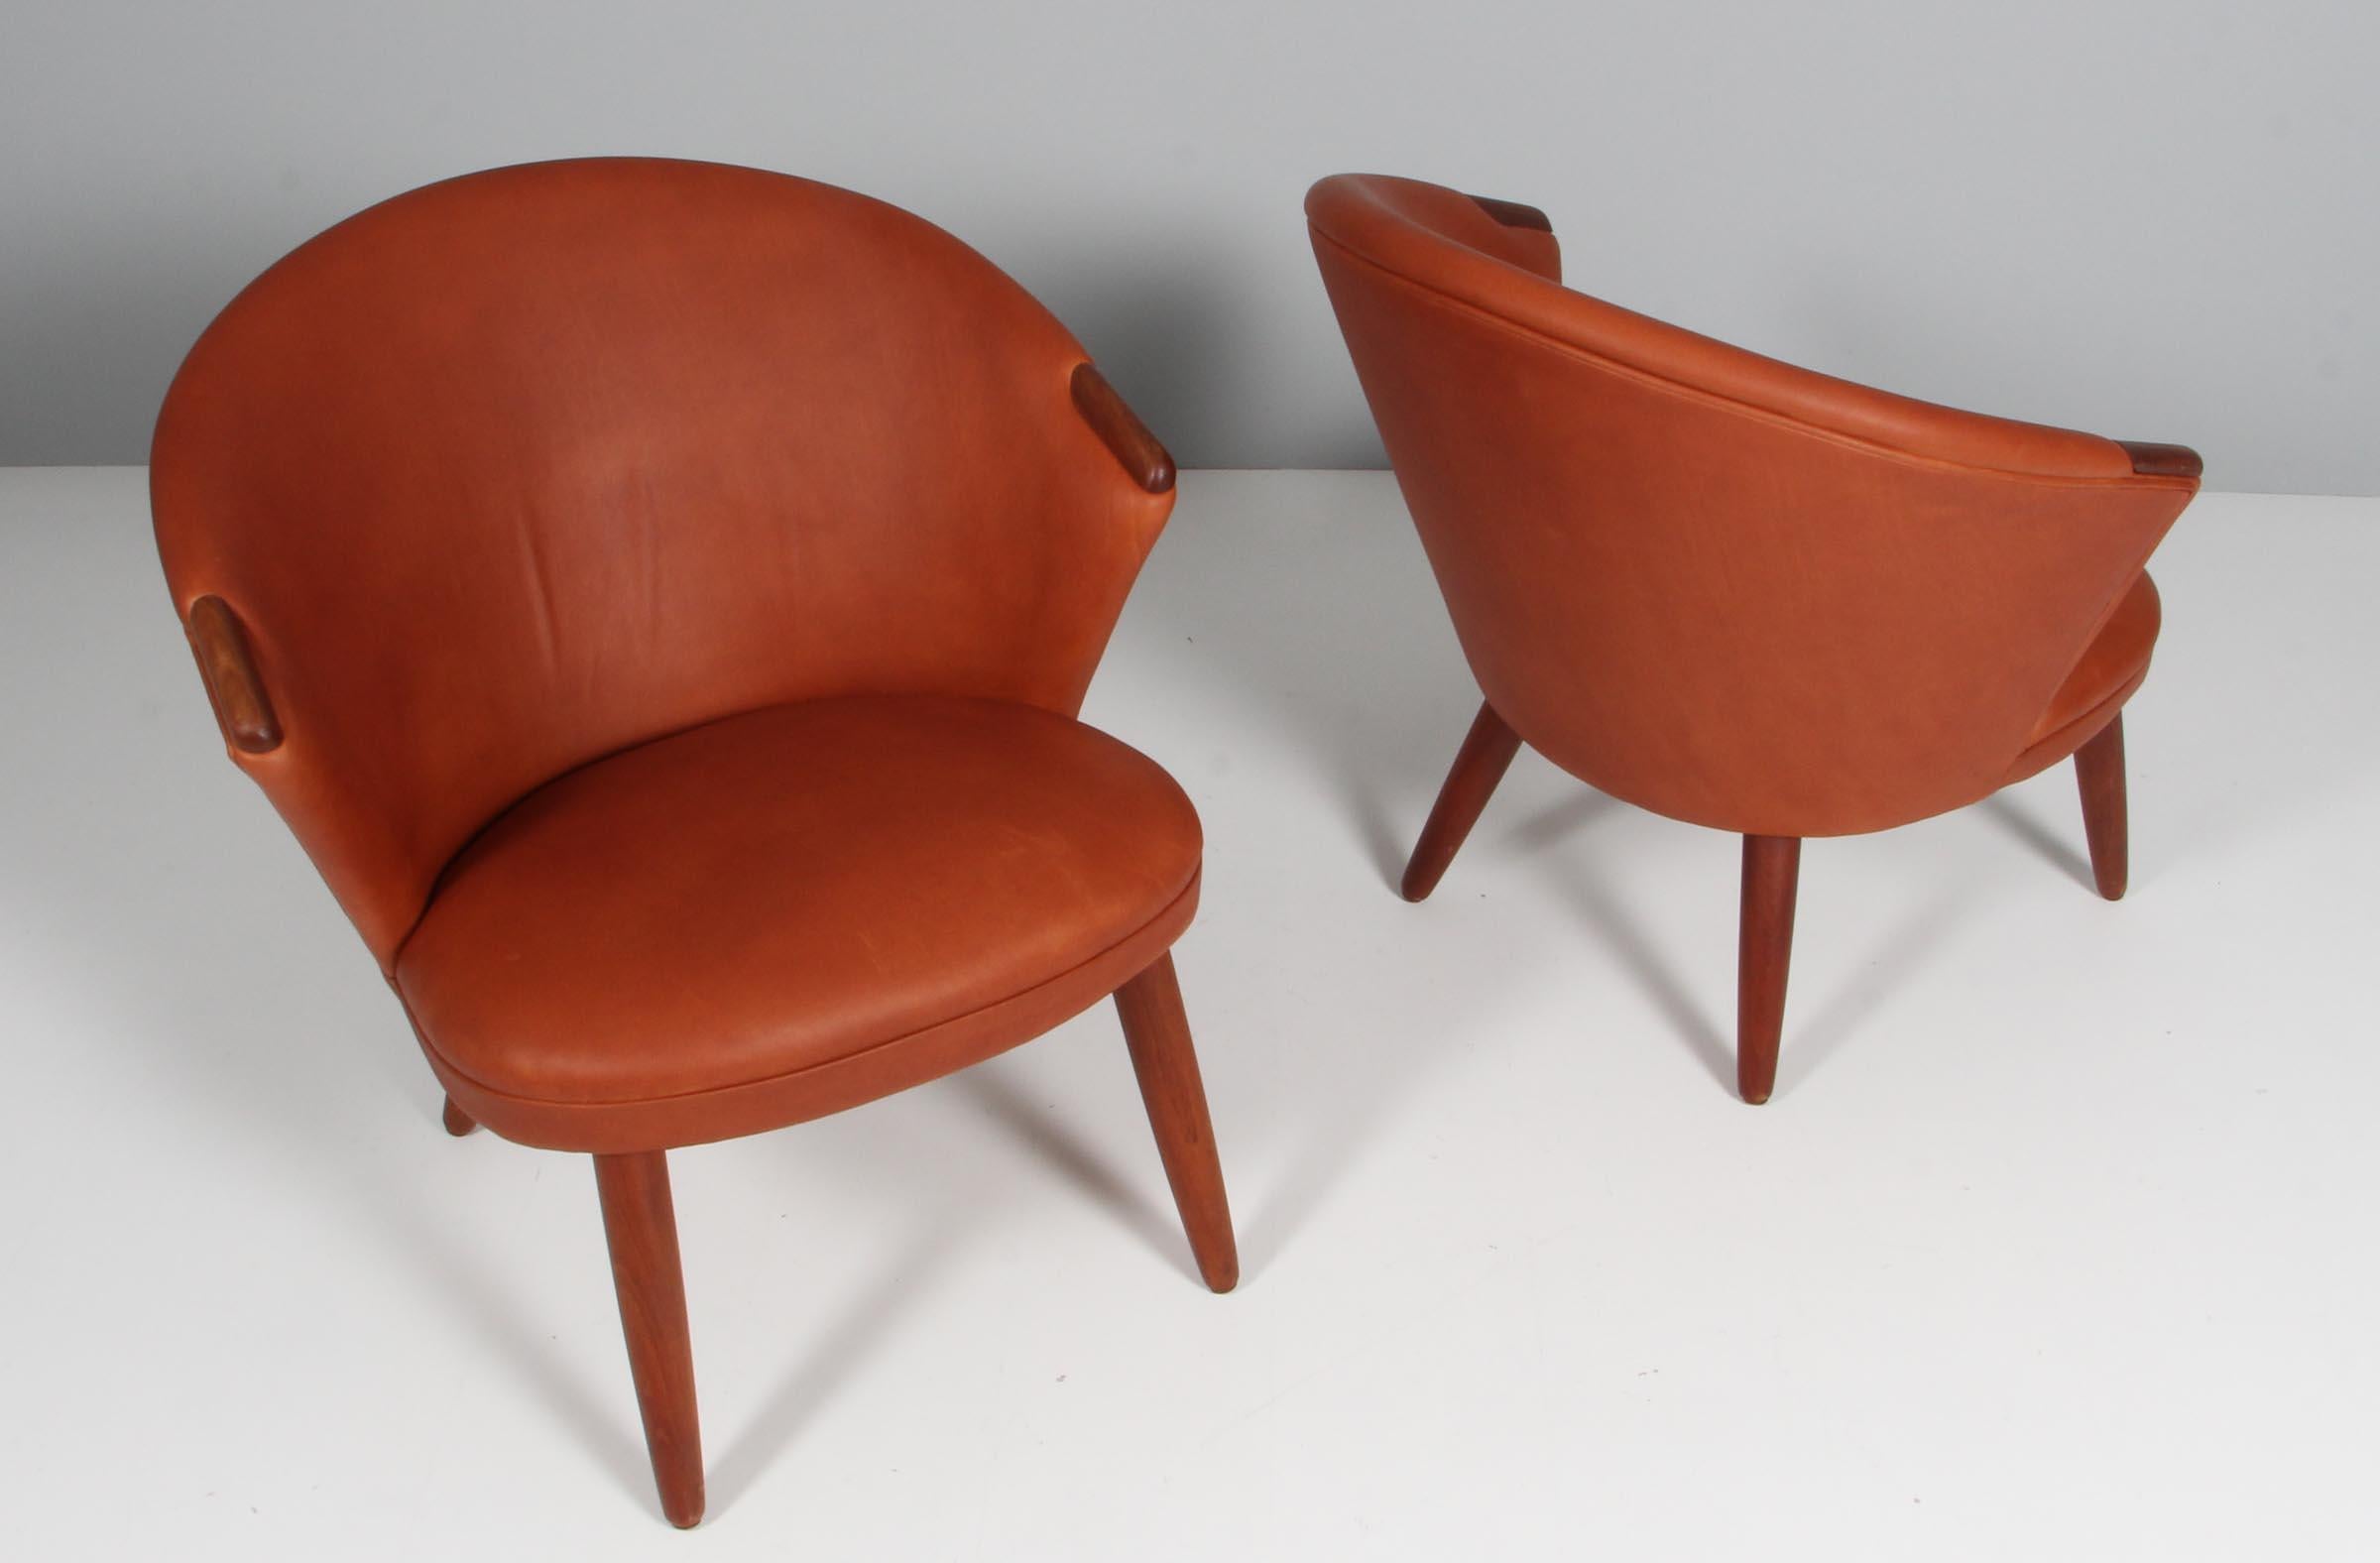 Bent Møller Jepsen's iconic lounge chair originally named the 